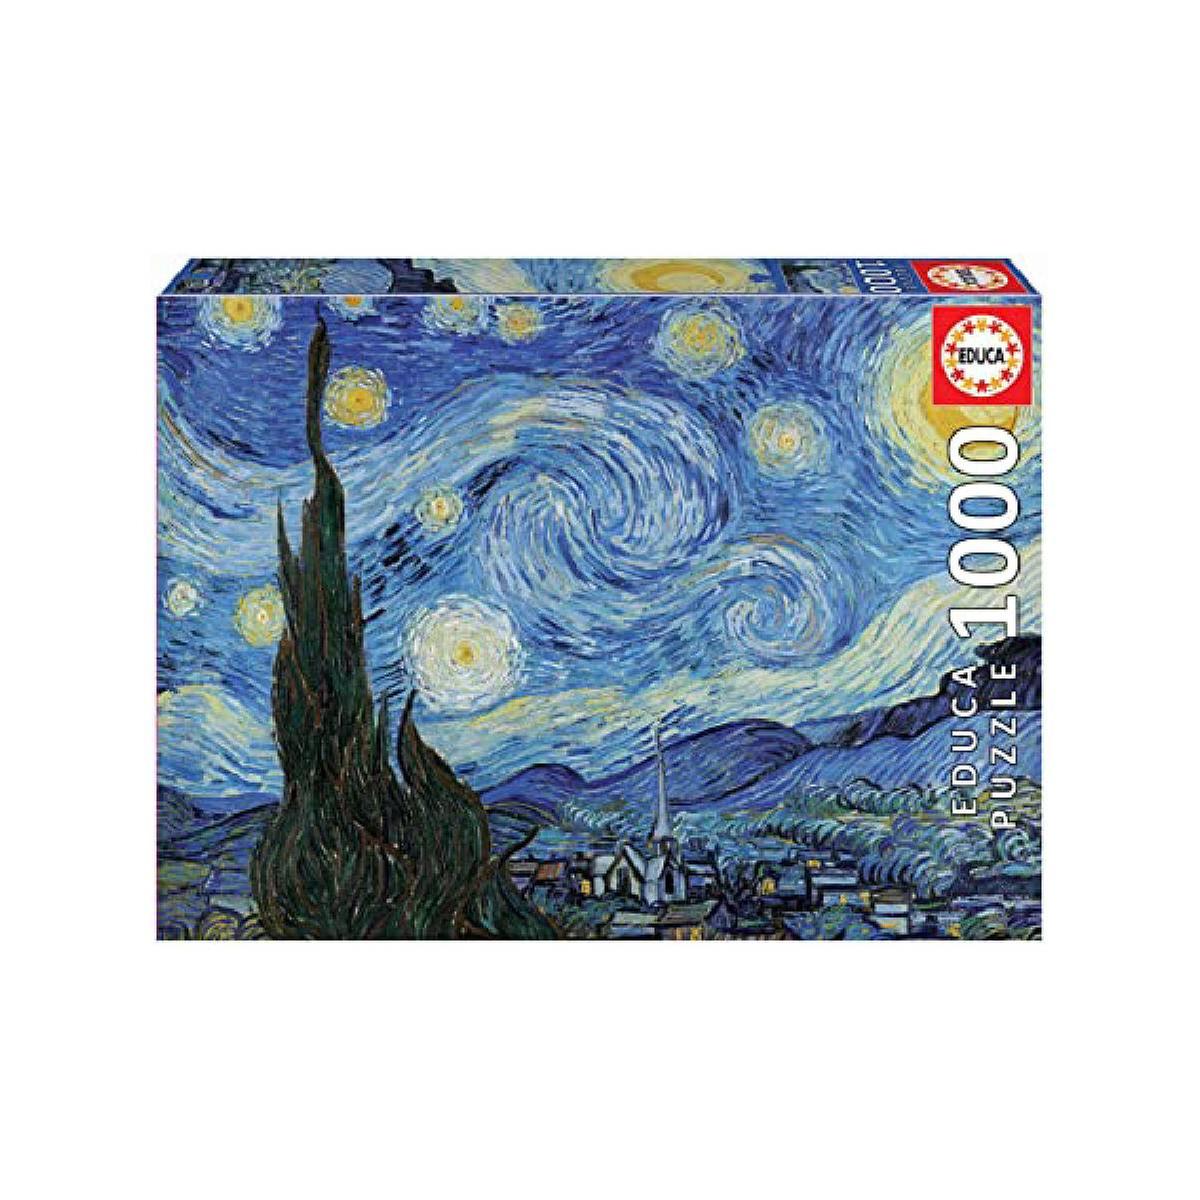 Educa Borrás - La noche estrellada, Vincent Van Gogh - Puzzle 1000 piezas |  Selección especial día del Padre | Toys"R"Us España